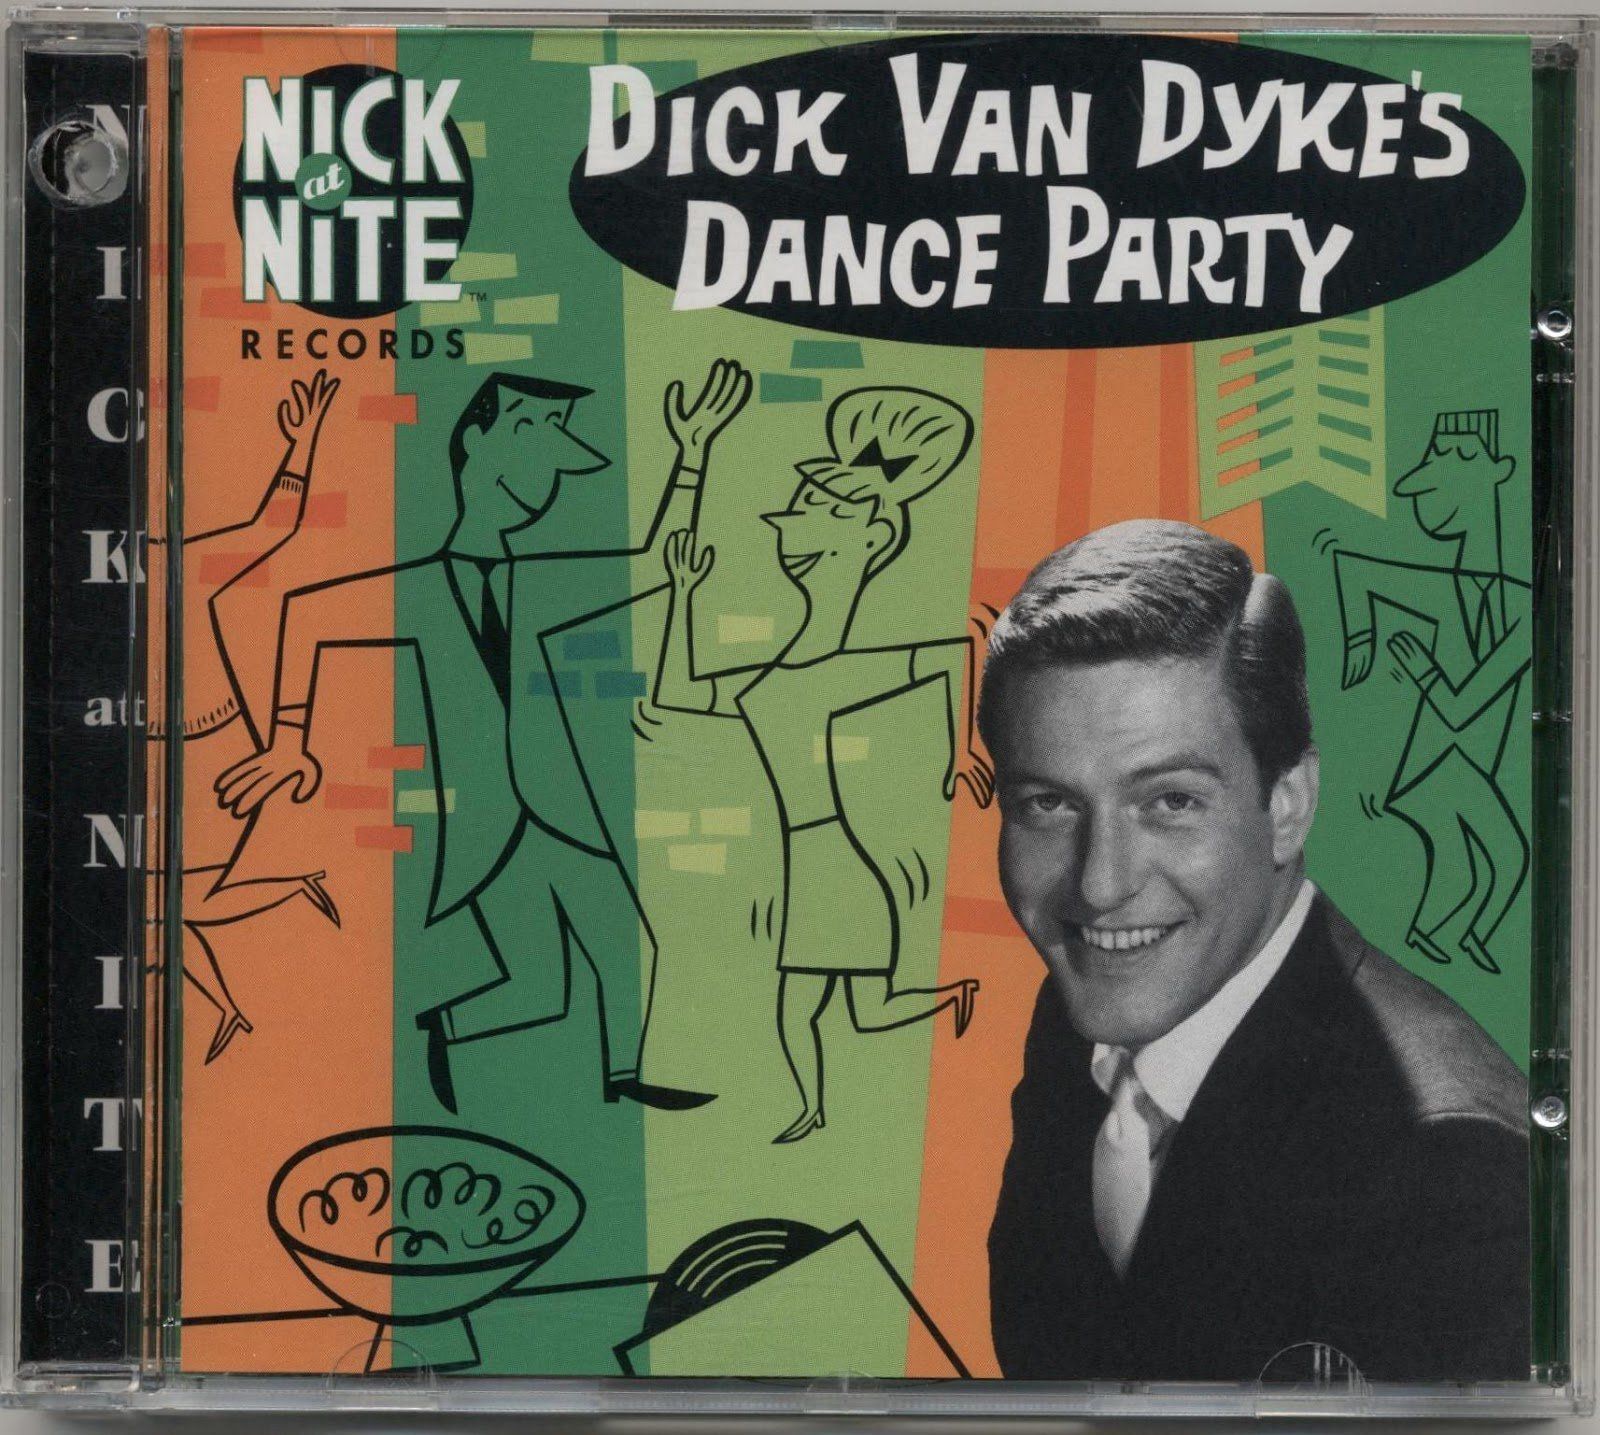 Dance dick dykes party van